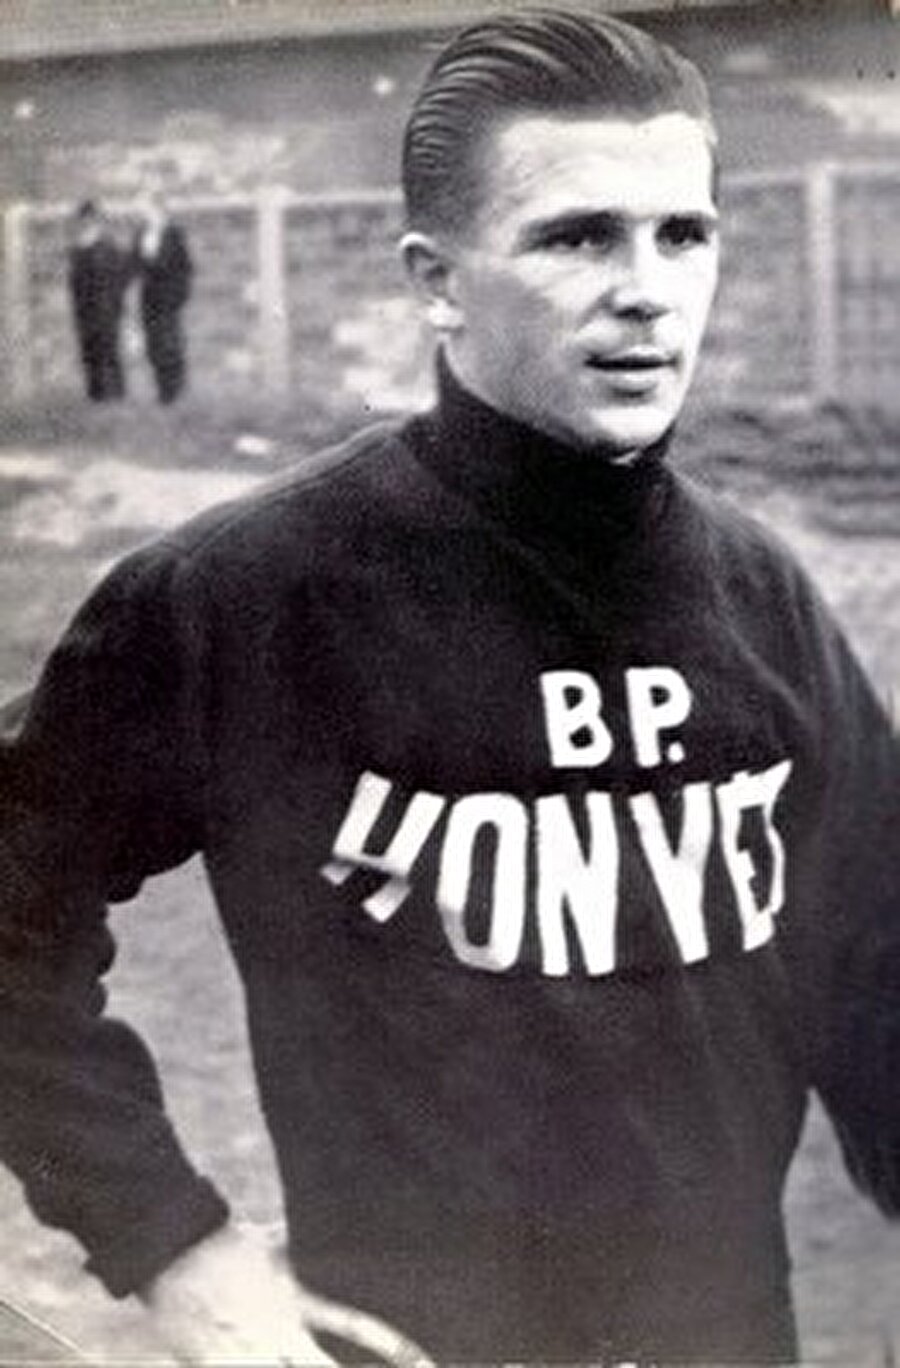 Genç forvet 1949'da Budapest Honvéd'e transfer oldu. Burada 6 yıl forma giyen Puskas, 164 maçta 165 gol attı. Puskas maç maçına gol ortalamasıyla adını tarihe altın harflerle yazdırdı. Puskas attığı şık gollerle tüm dünyanın dikkatini kısa süre içinde çekti. 